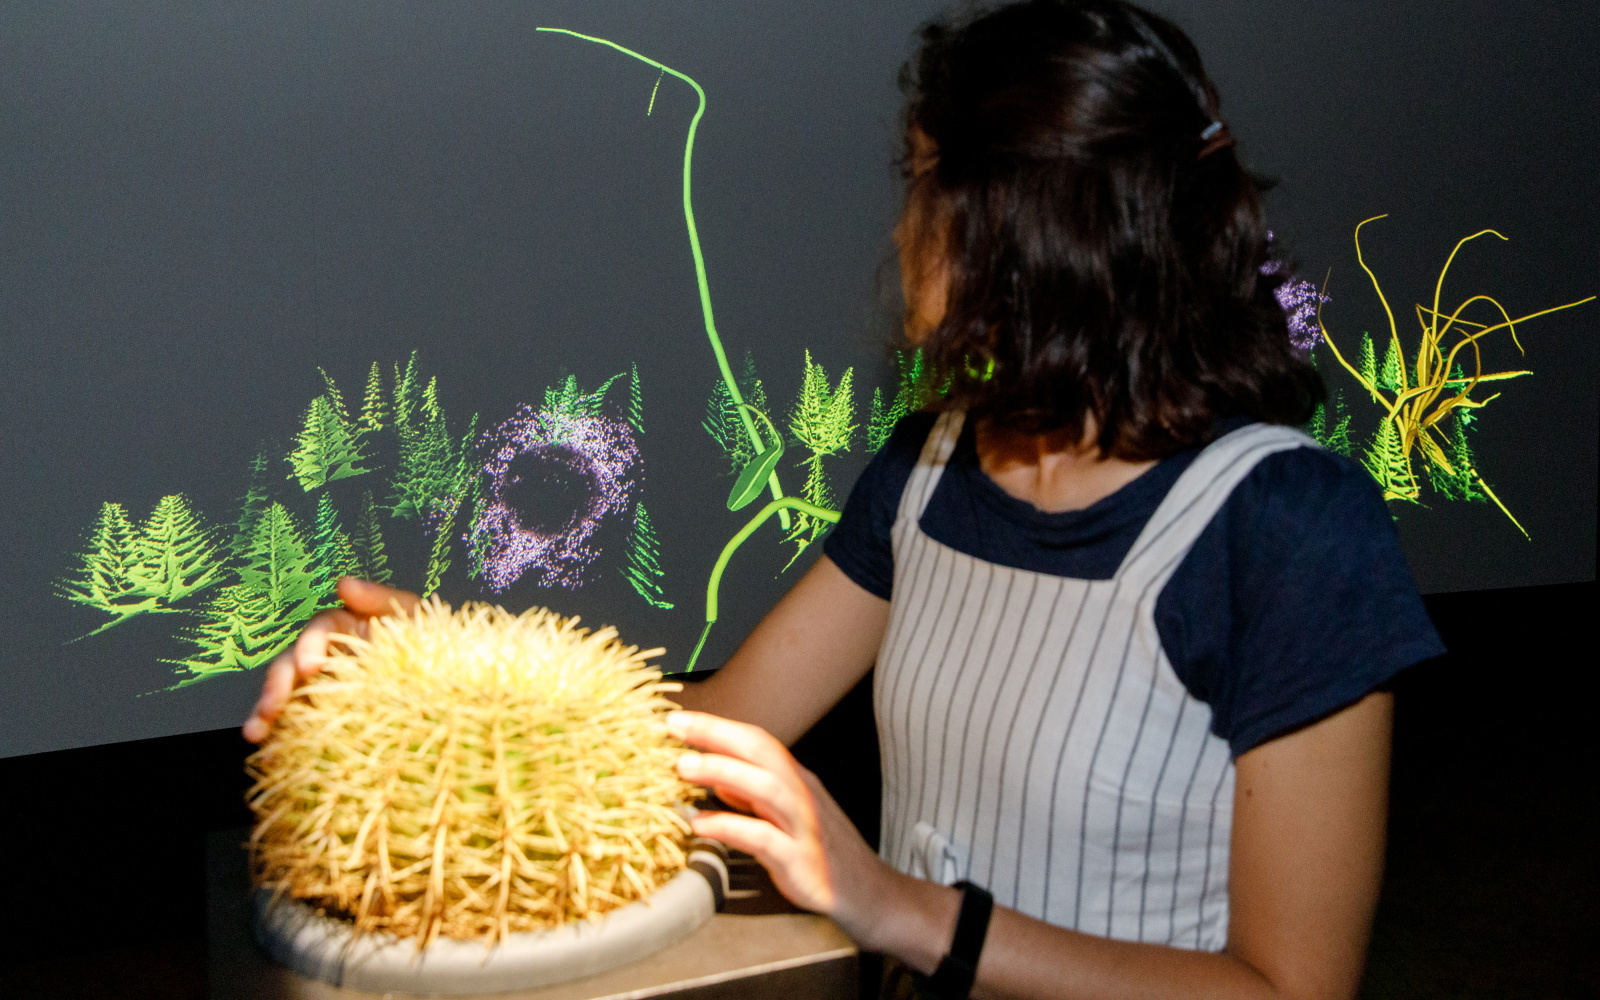 Ein junge Frau berührt eine Pflanze und betrachtet dabei eine Projektion mit Pflanzen auf einer Wand daneben.